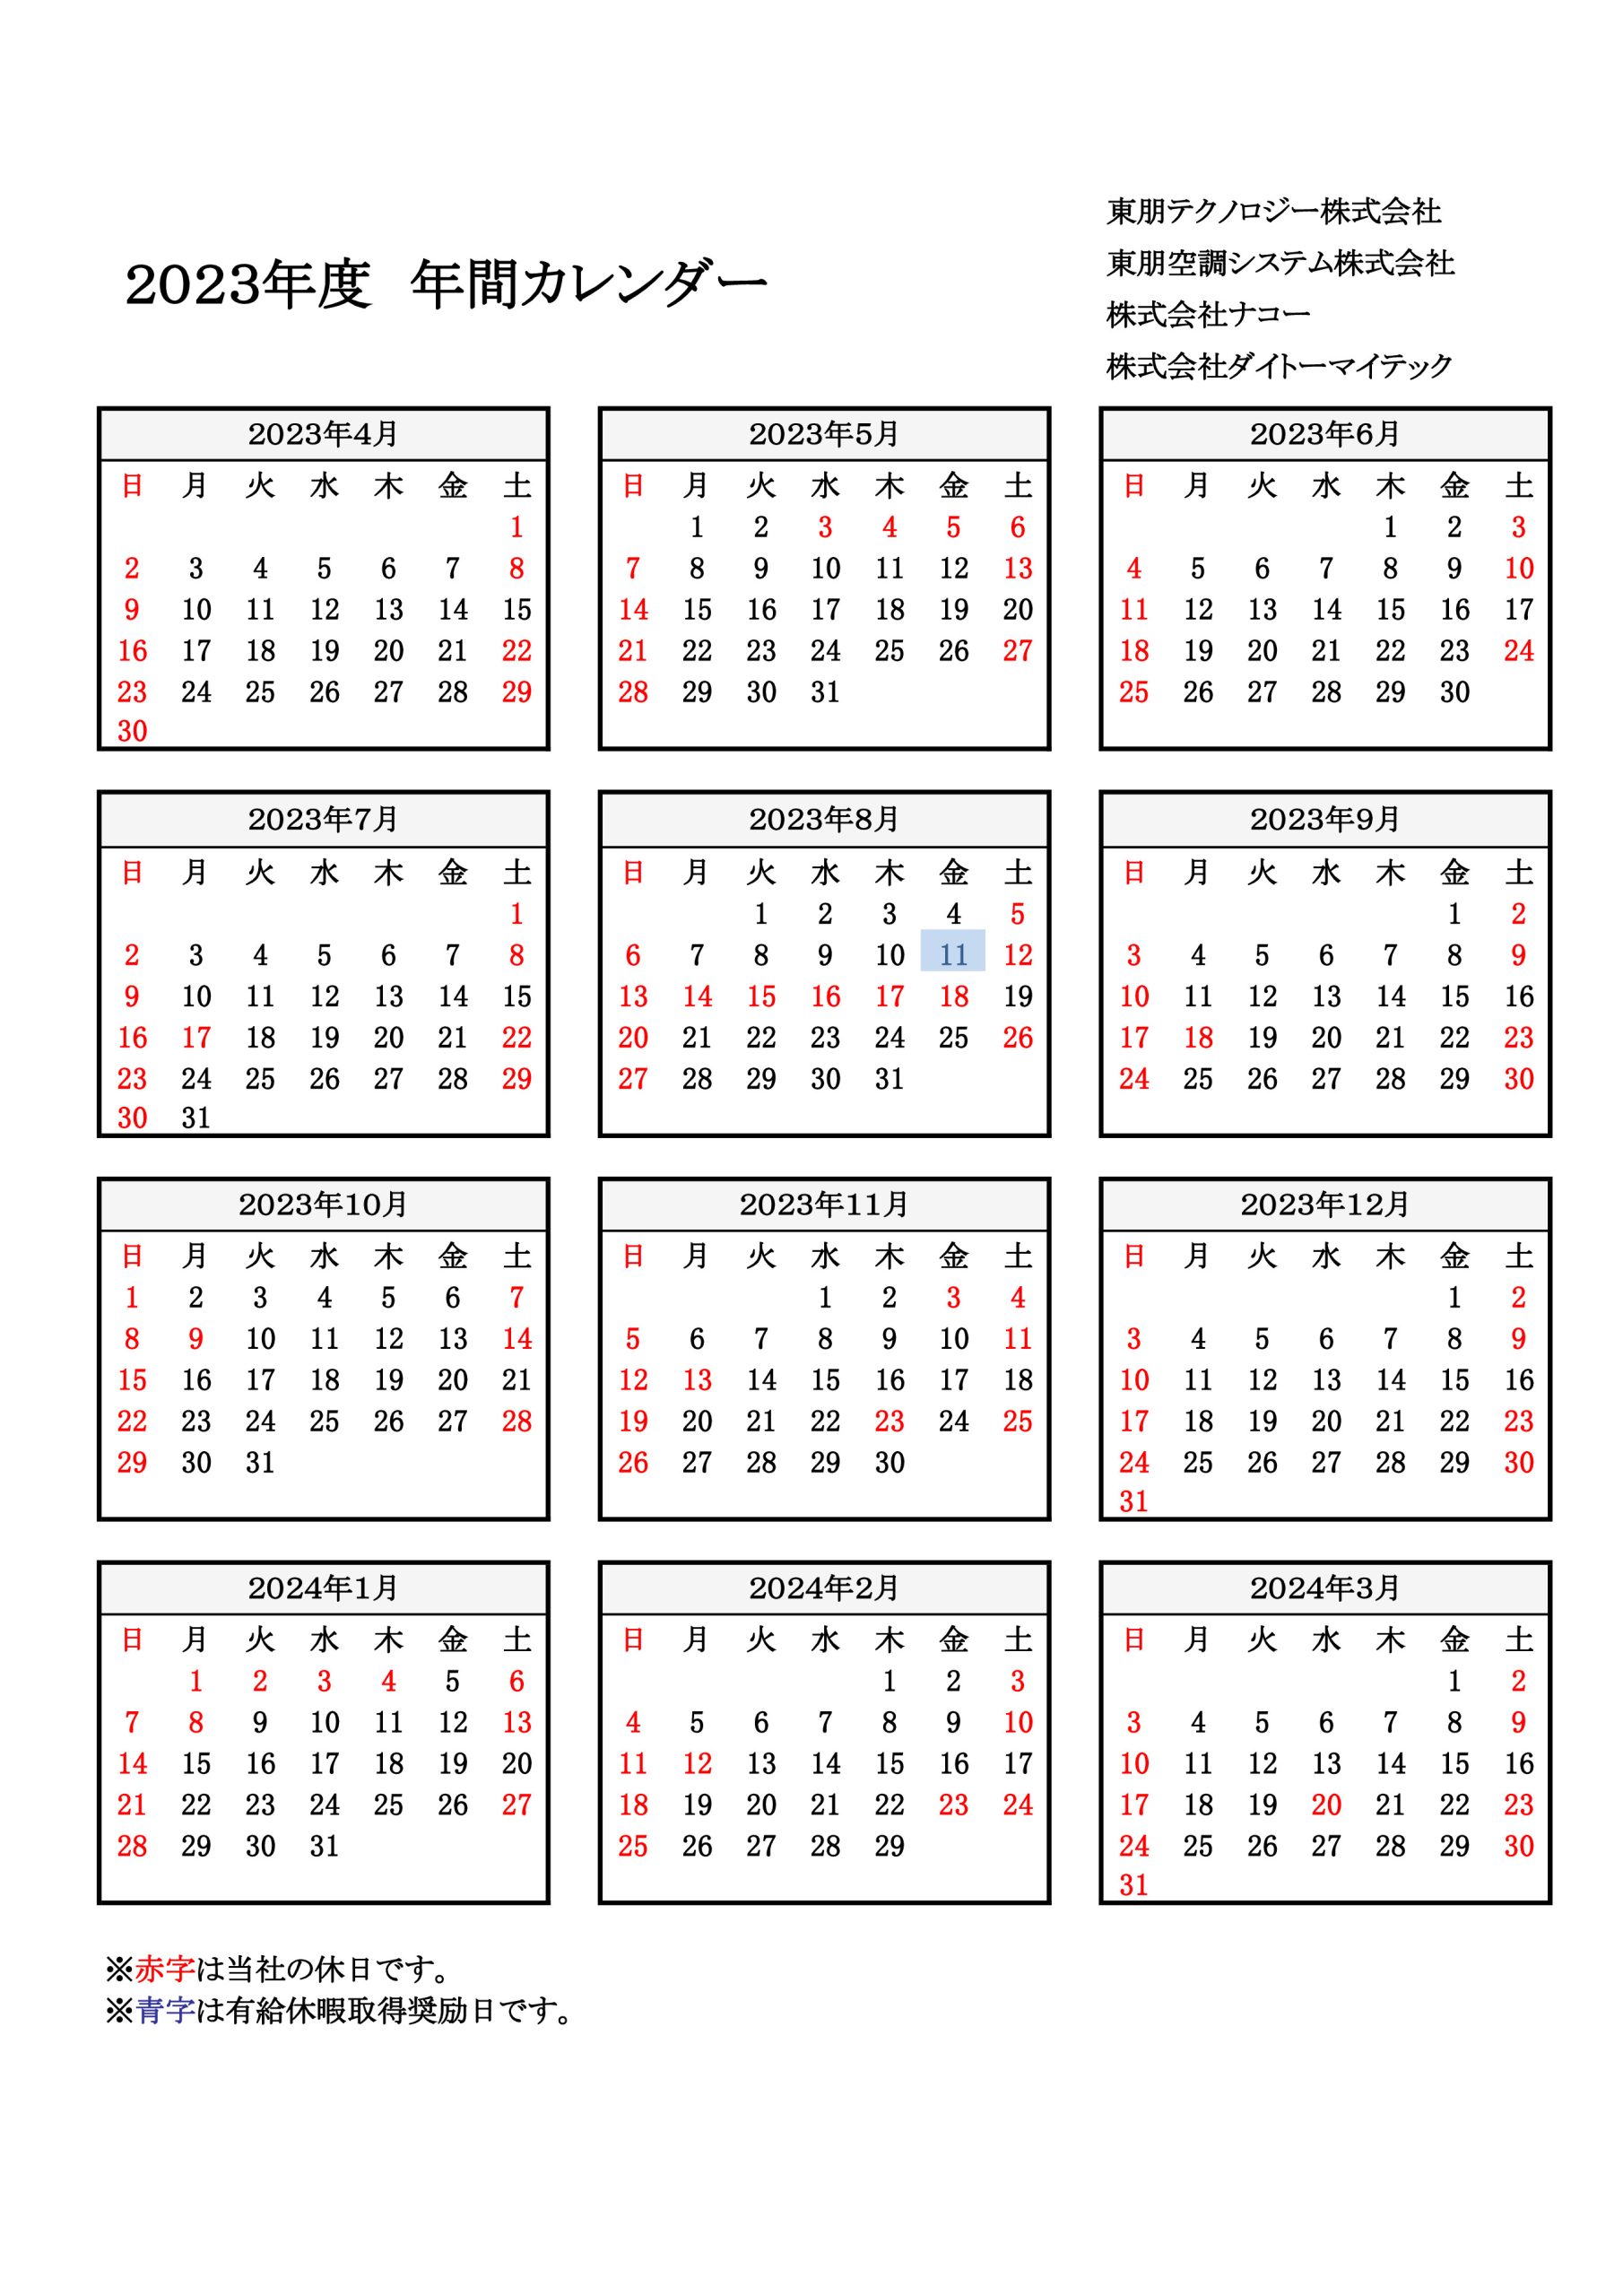 2023年度のカレンダー